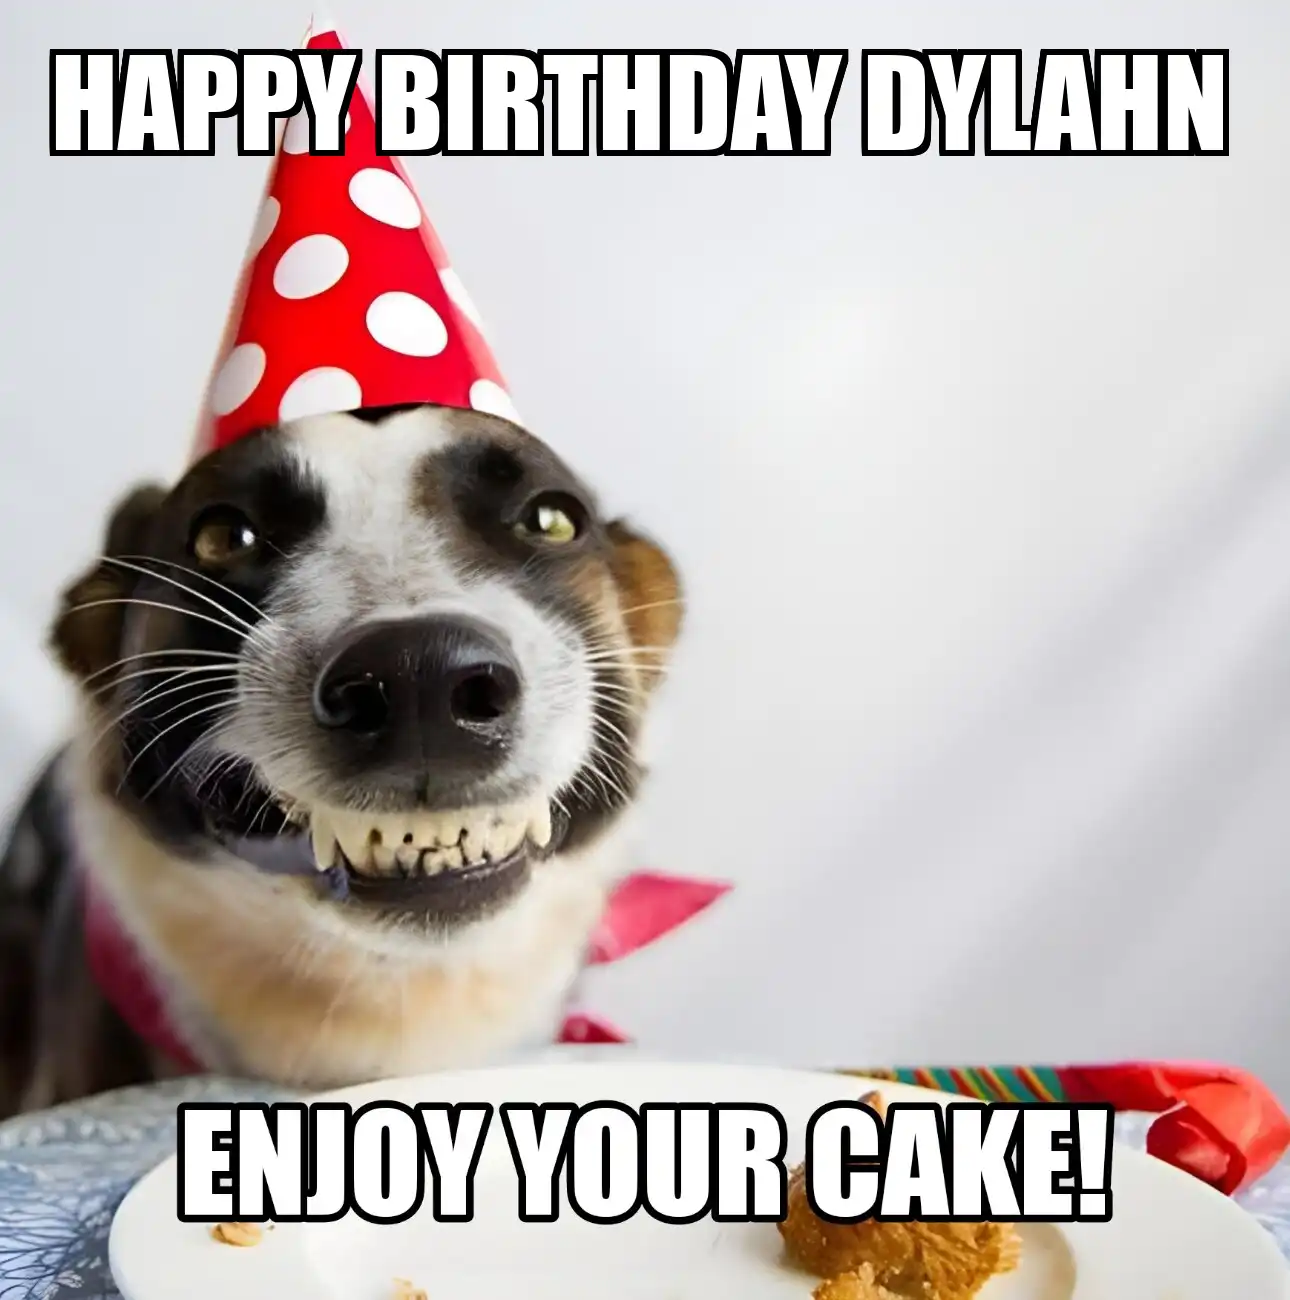 Happy Birthday Dylahn Enjoy Your Cake Dog Meme